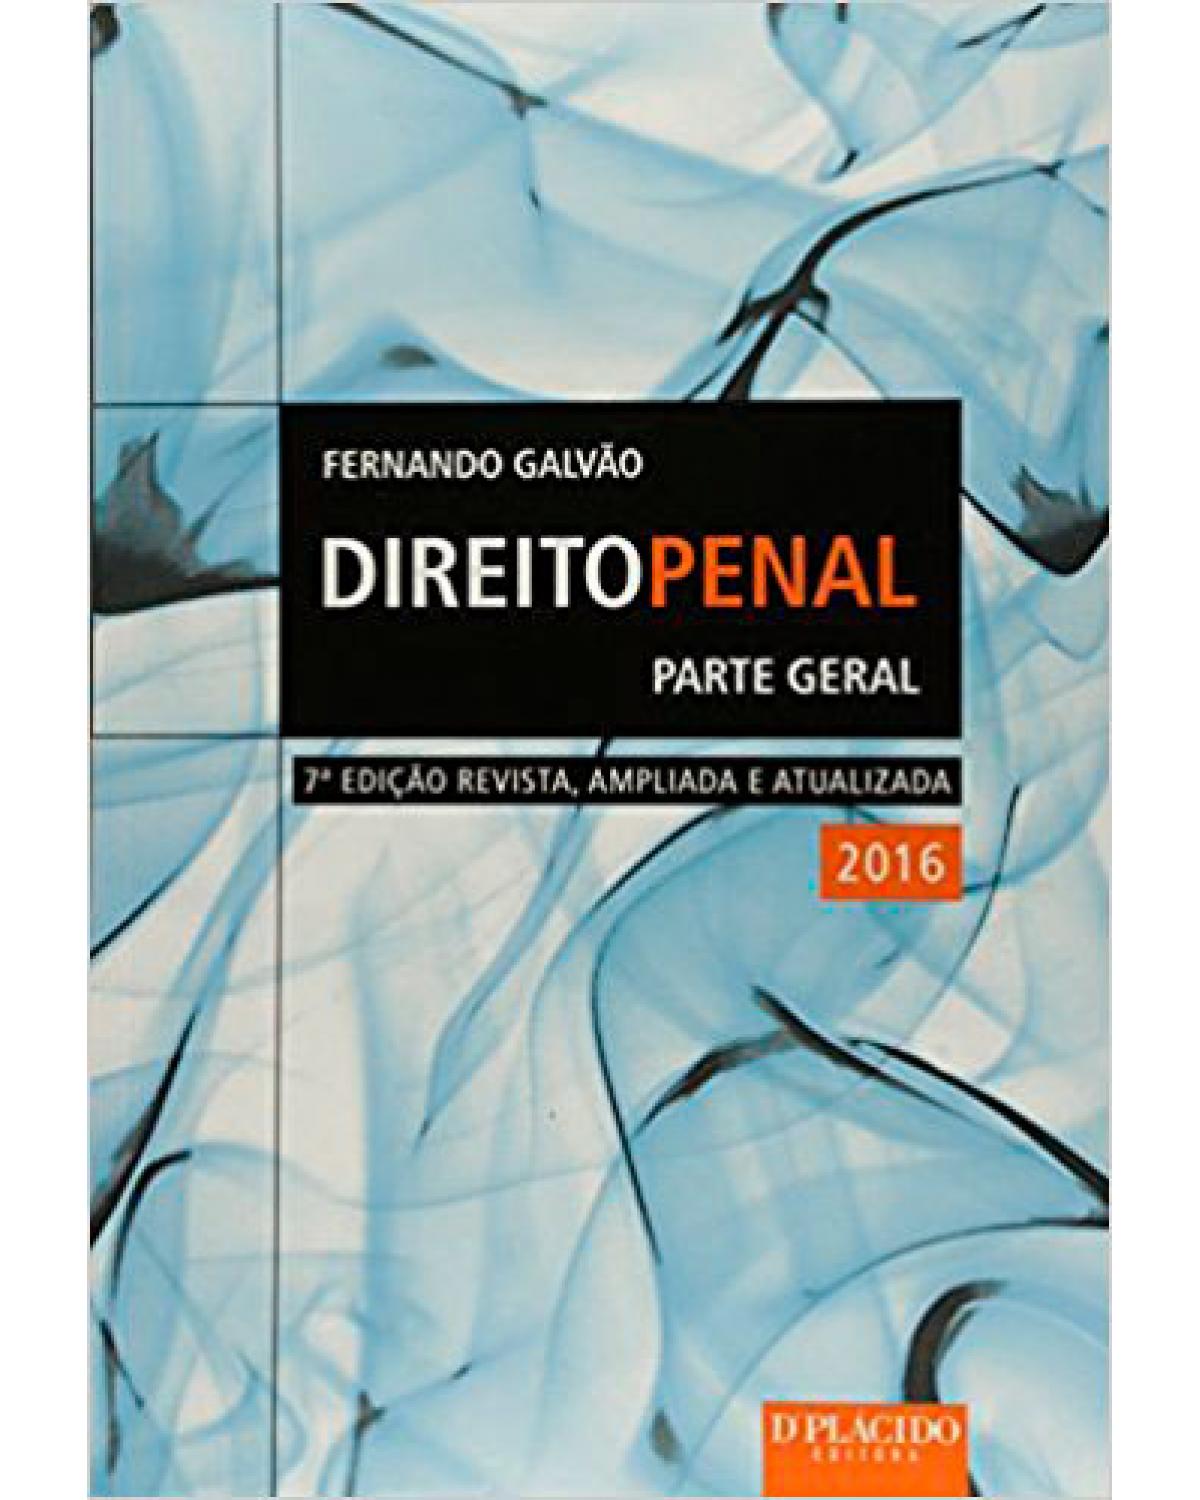 Direito penal: Parte geral 2016 - 7ª Edição